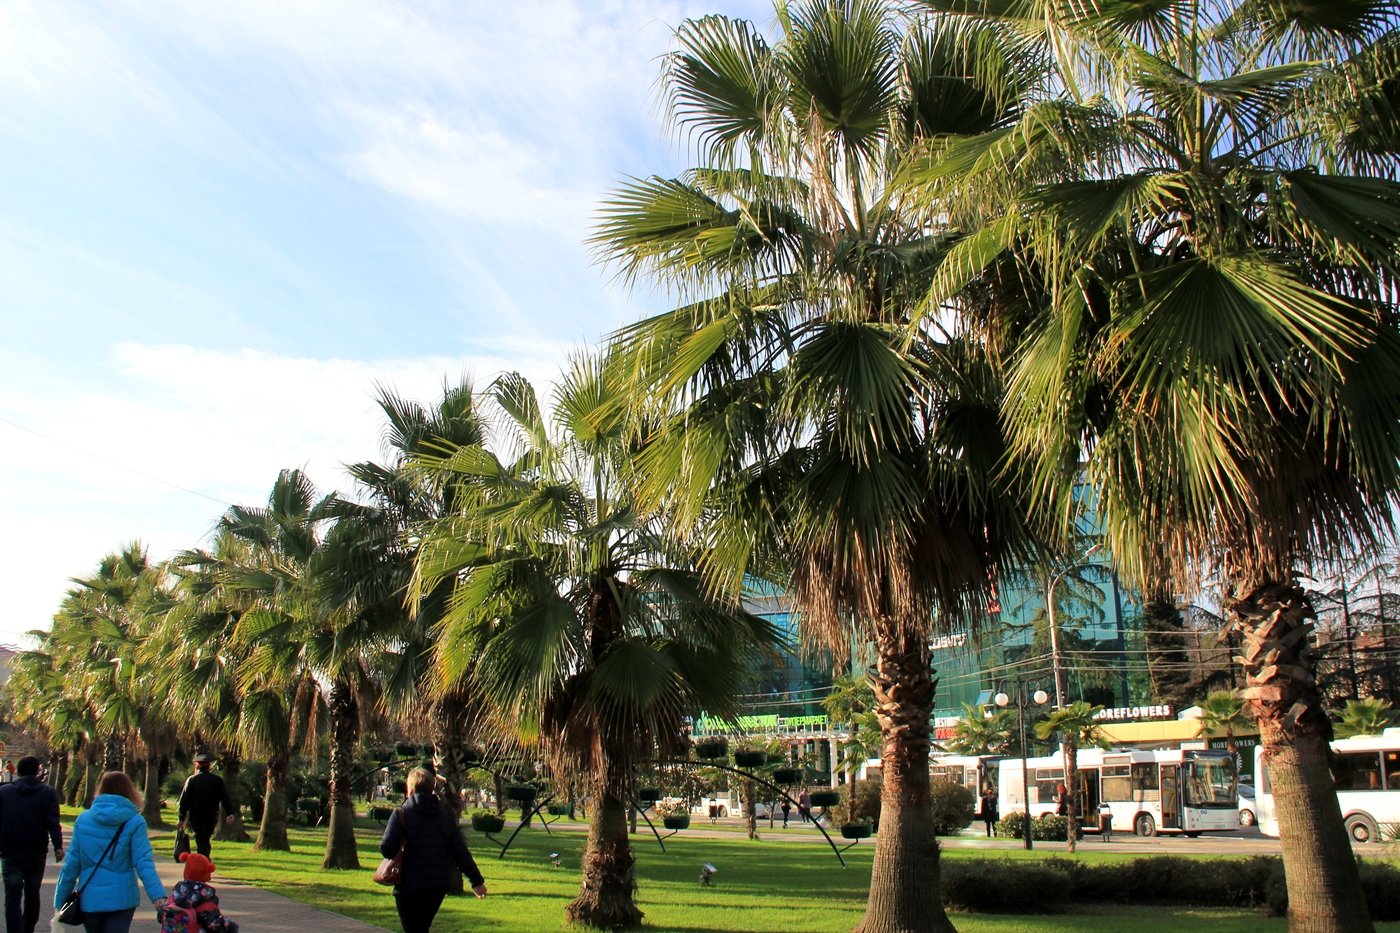 Страна где пальмы. Парк с пальмами в Адлере. Аллея пальм Олимпийский парк Адлер. Сочи пальмы Адлер. Пальмовая аллея Имеретинка.